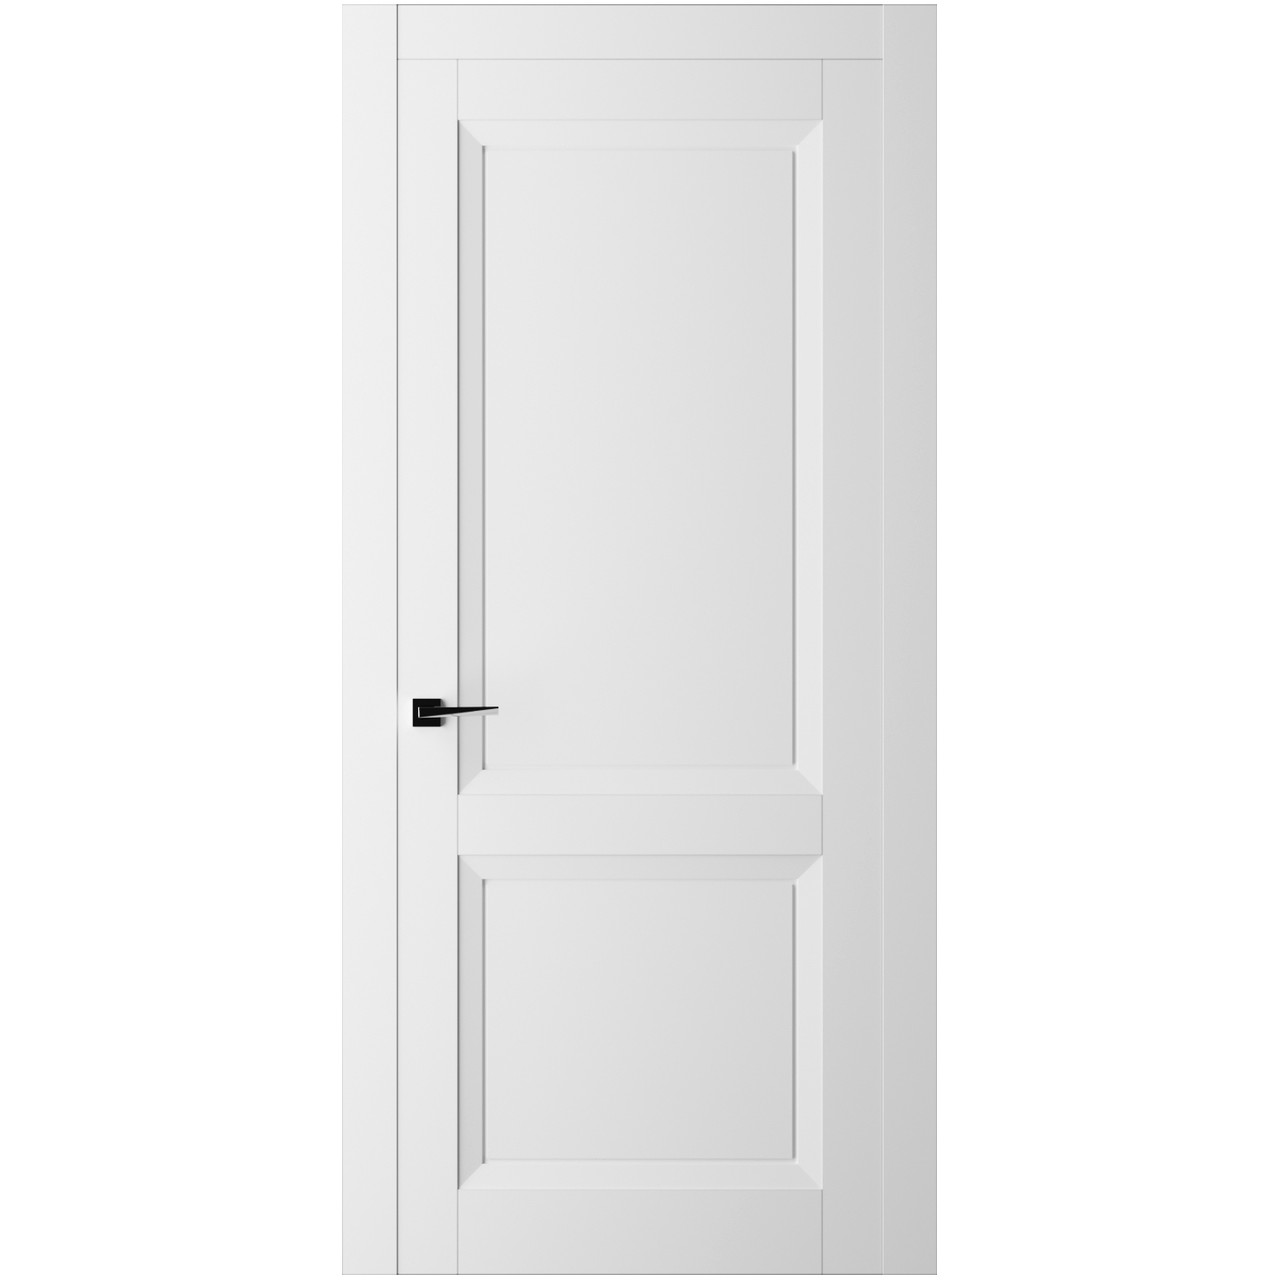 Дверь межкомнатная Ликорн Френч Кат ДКФКГ.2 2000*800*40мм (без замков и петель, с телескопической коробкой и